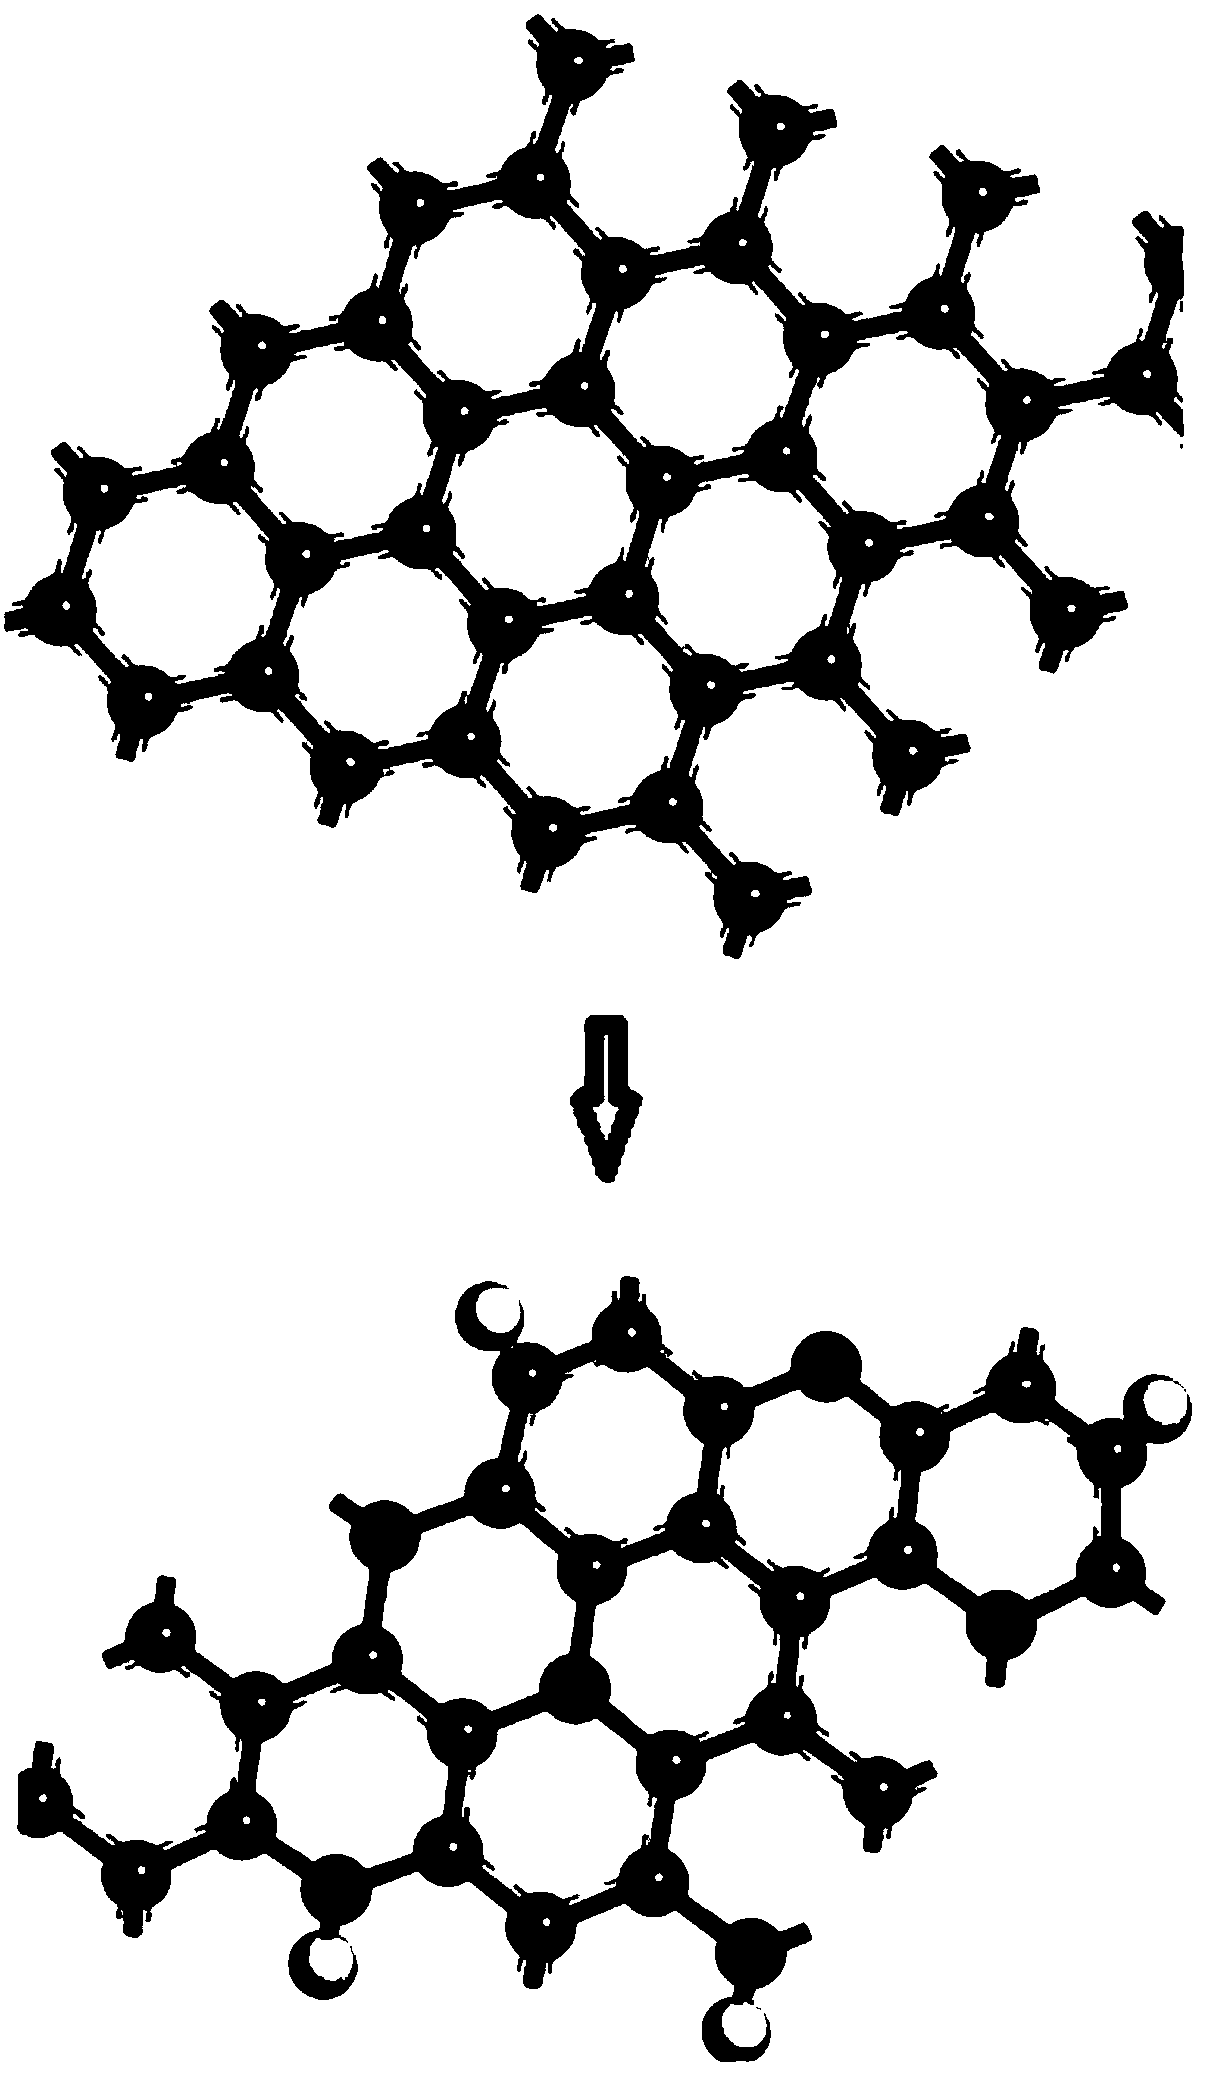 Method for rapidly preparing patterned doped graphene by ultraviolet laser